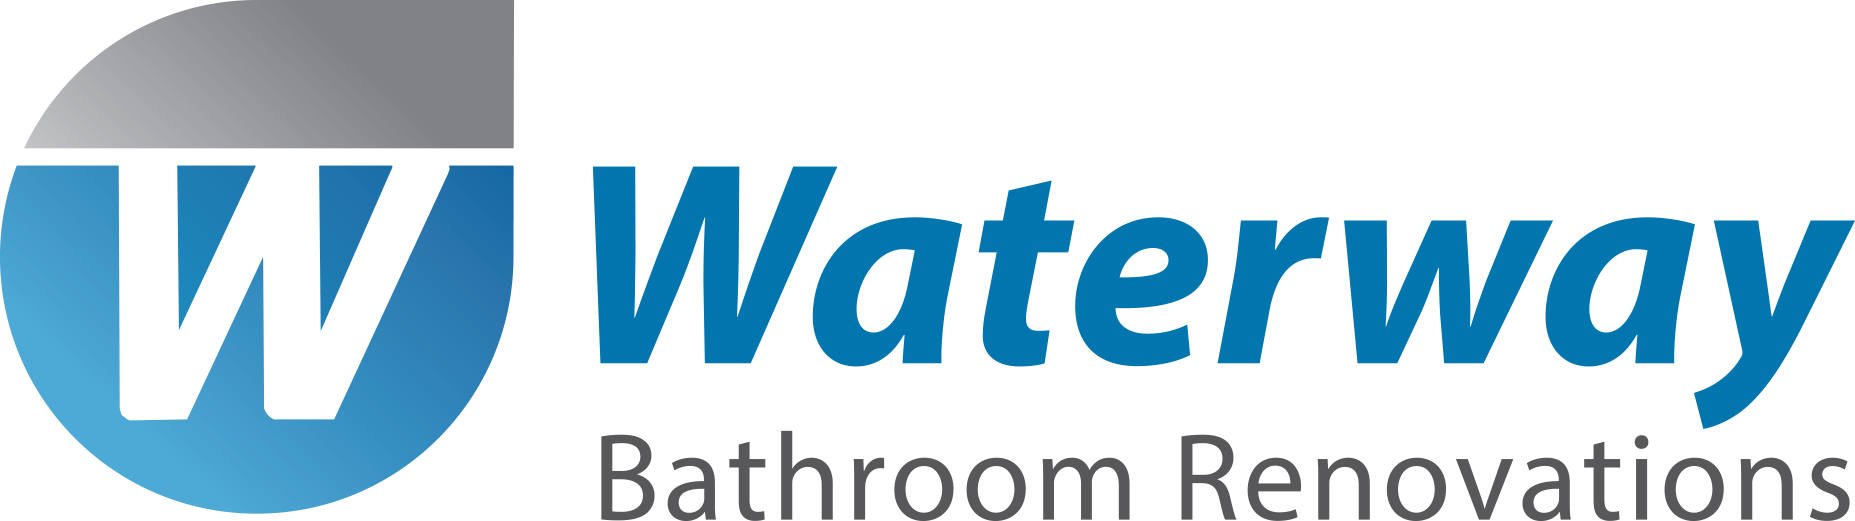 Sheena Labuschaine||Waterway Bathrooms, Mount Hawthorn